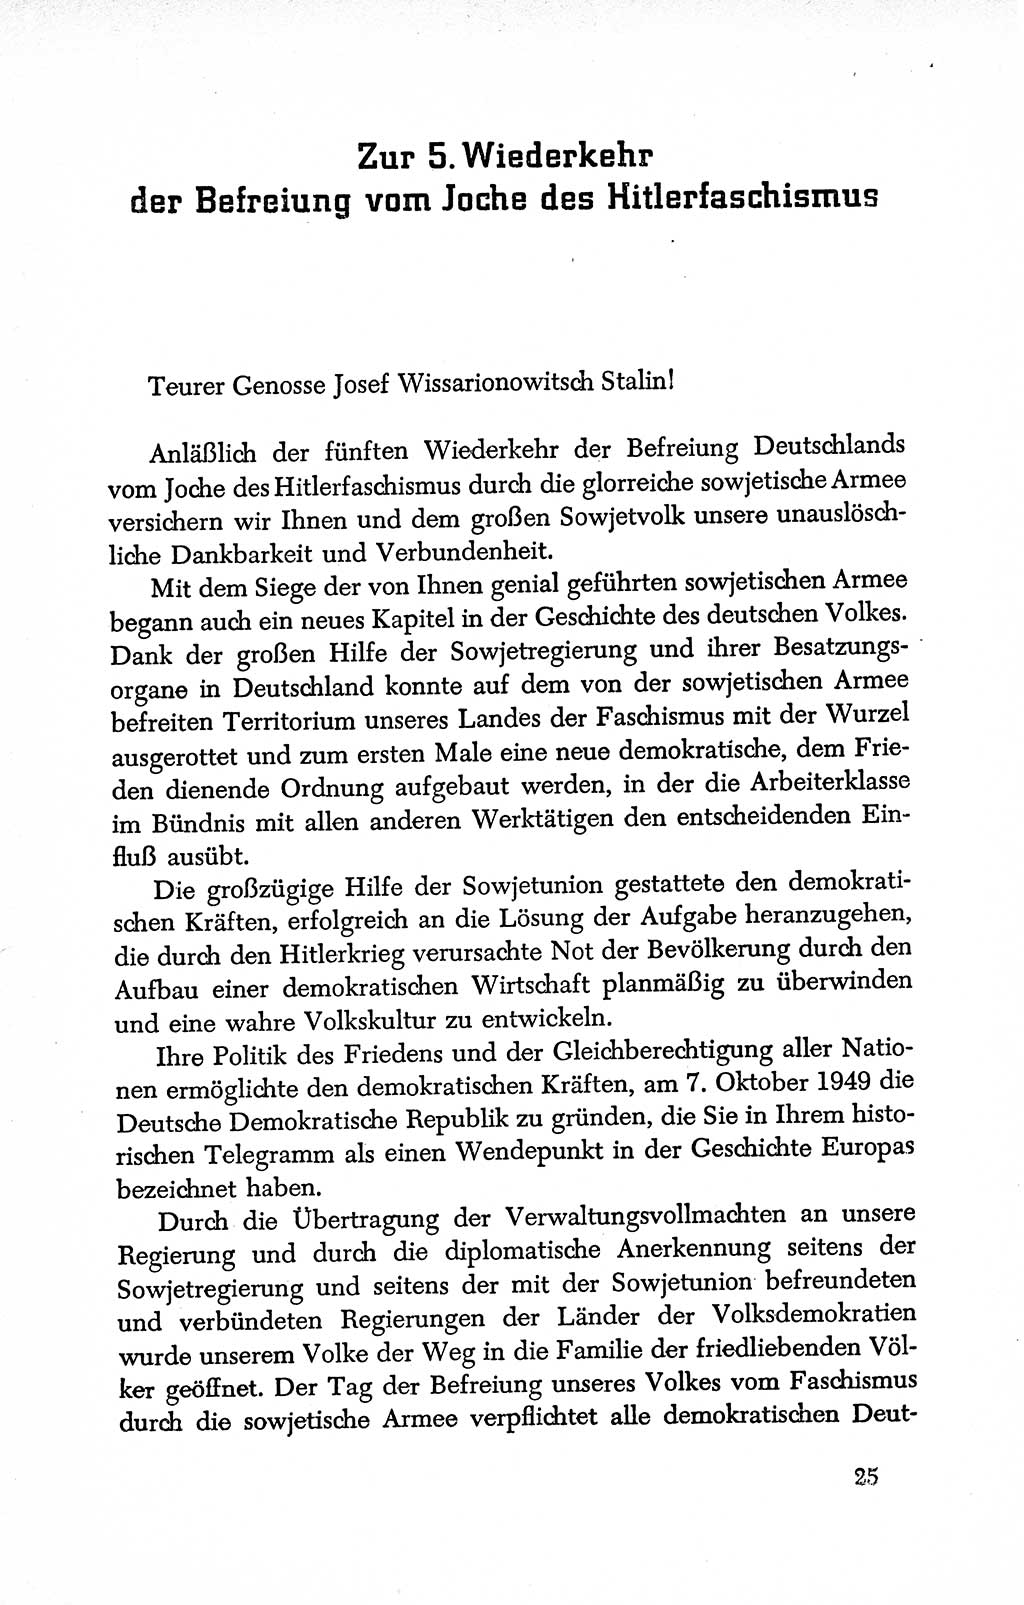 Dokumente der Sozialistischen Einheitspartei Deutschlands (SED) [Deutsche Demokratische Republik (DDR)] 1950-1952, Seite 25 (Dok. SED DDR 1950-1952, S. 25)